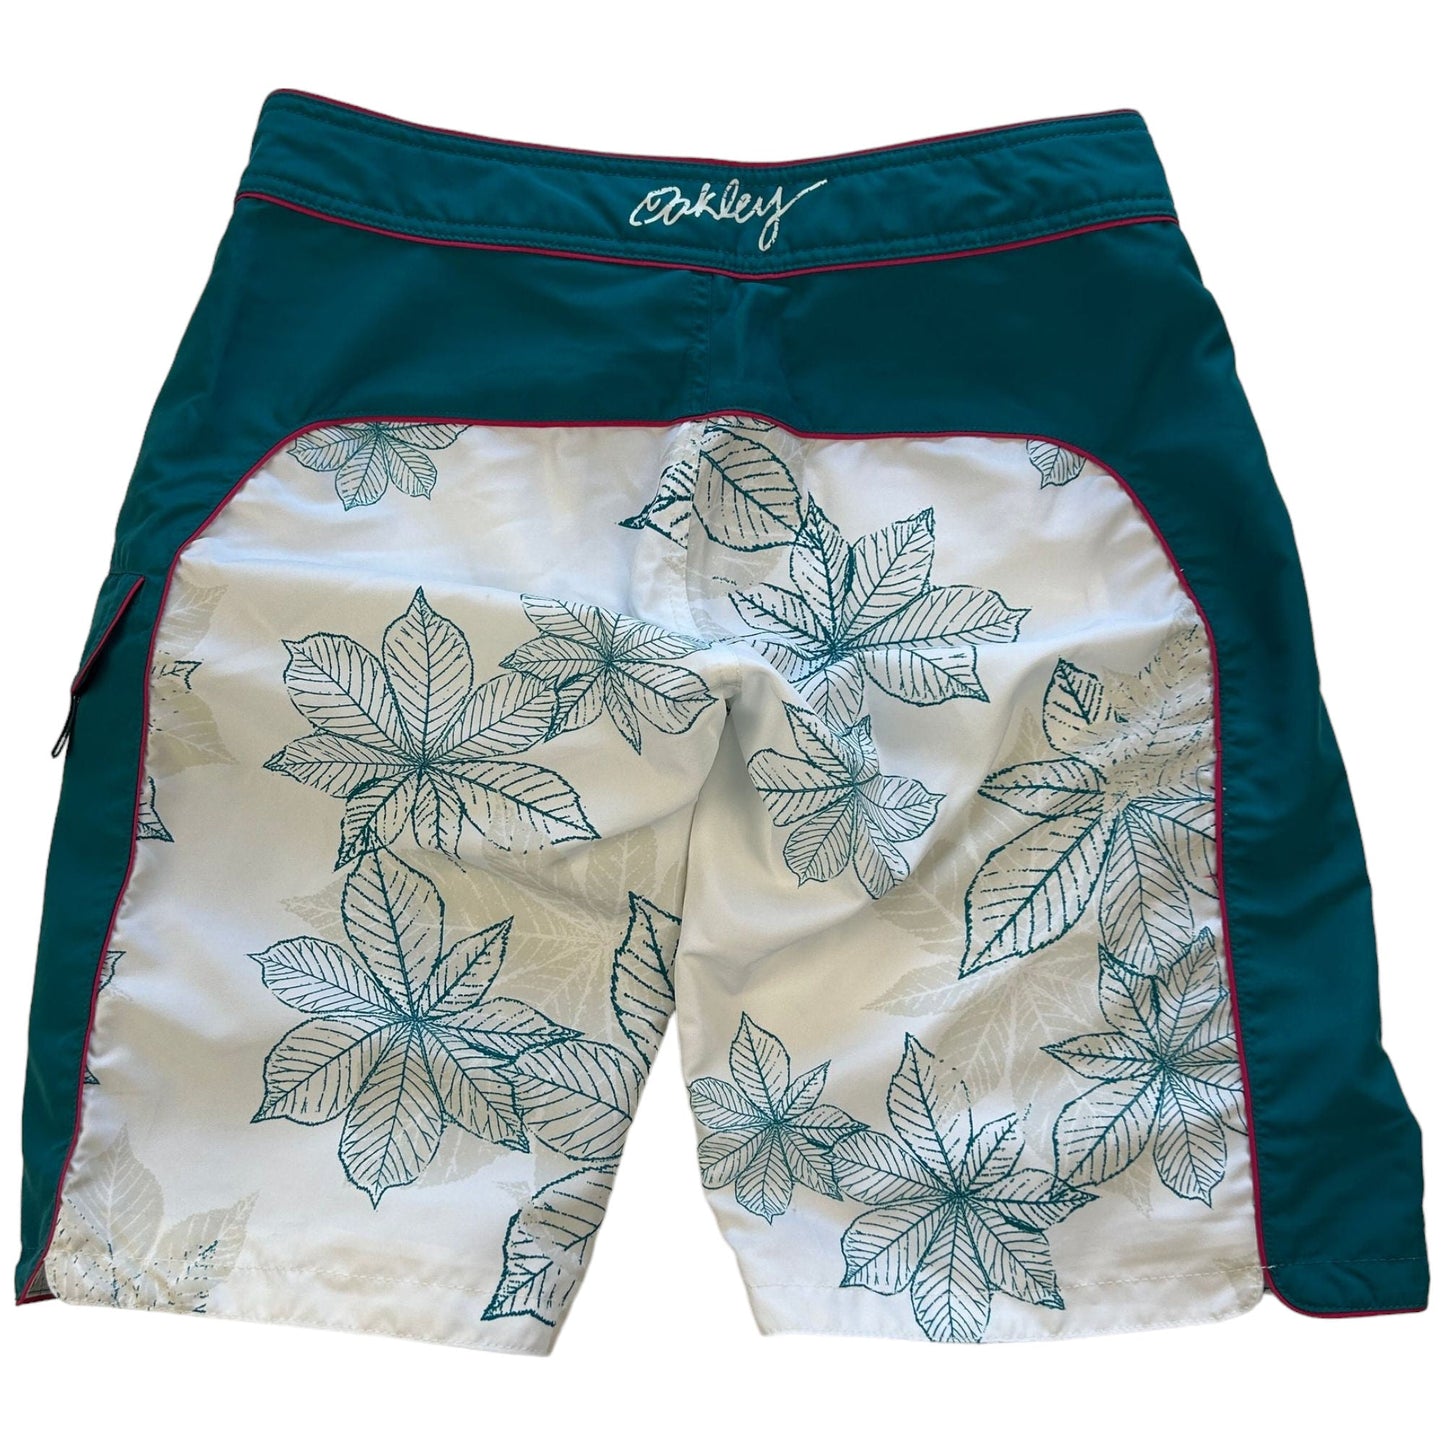 Vintage Oakley Swimwear Shorts Size W32